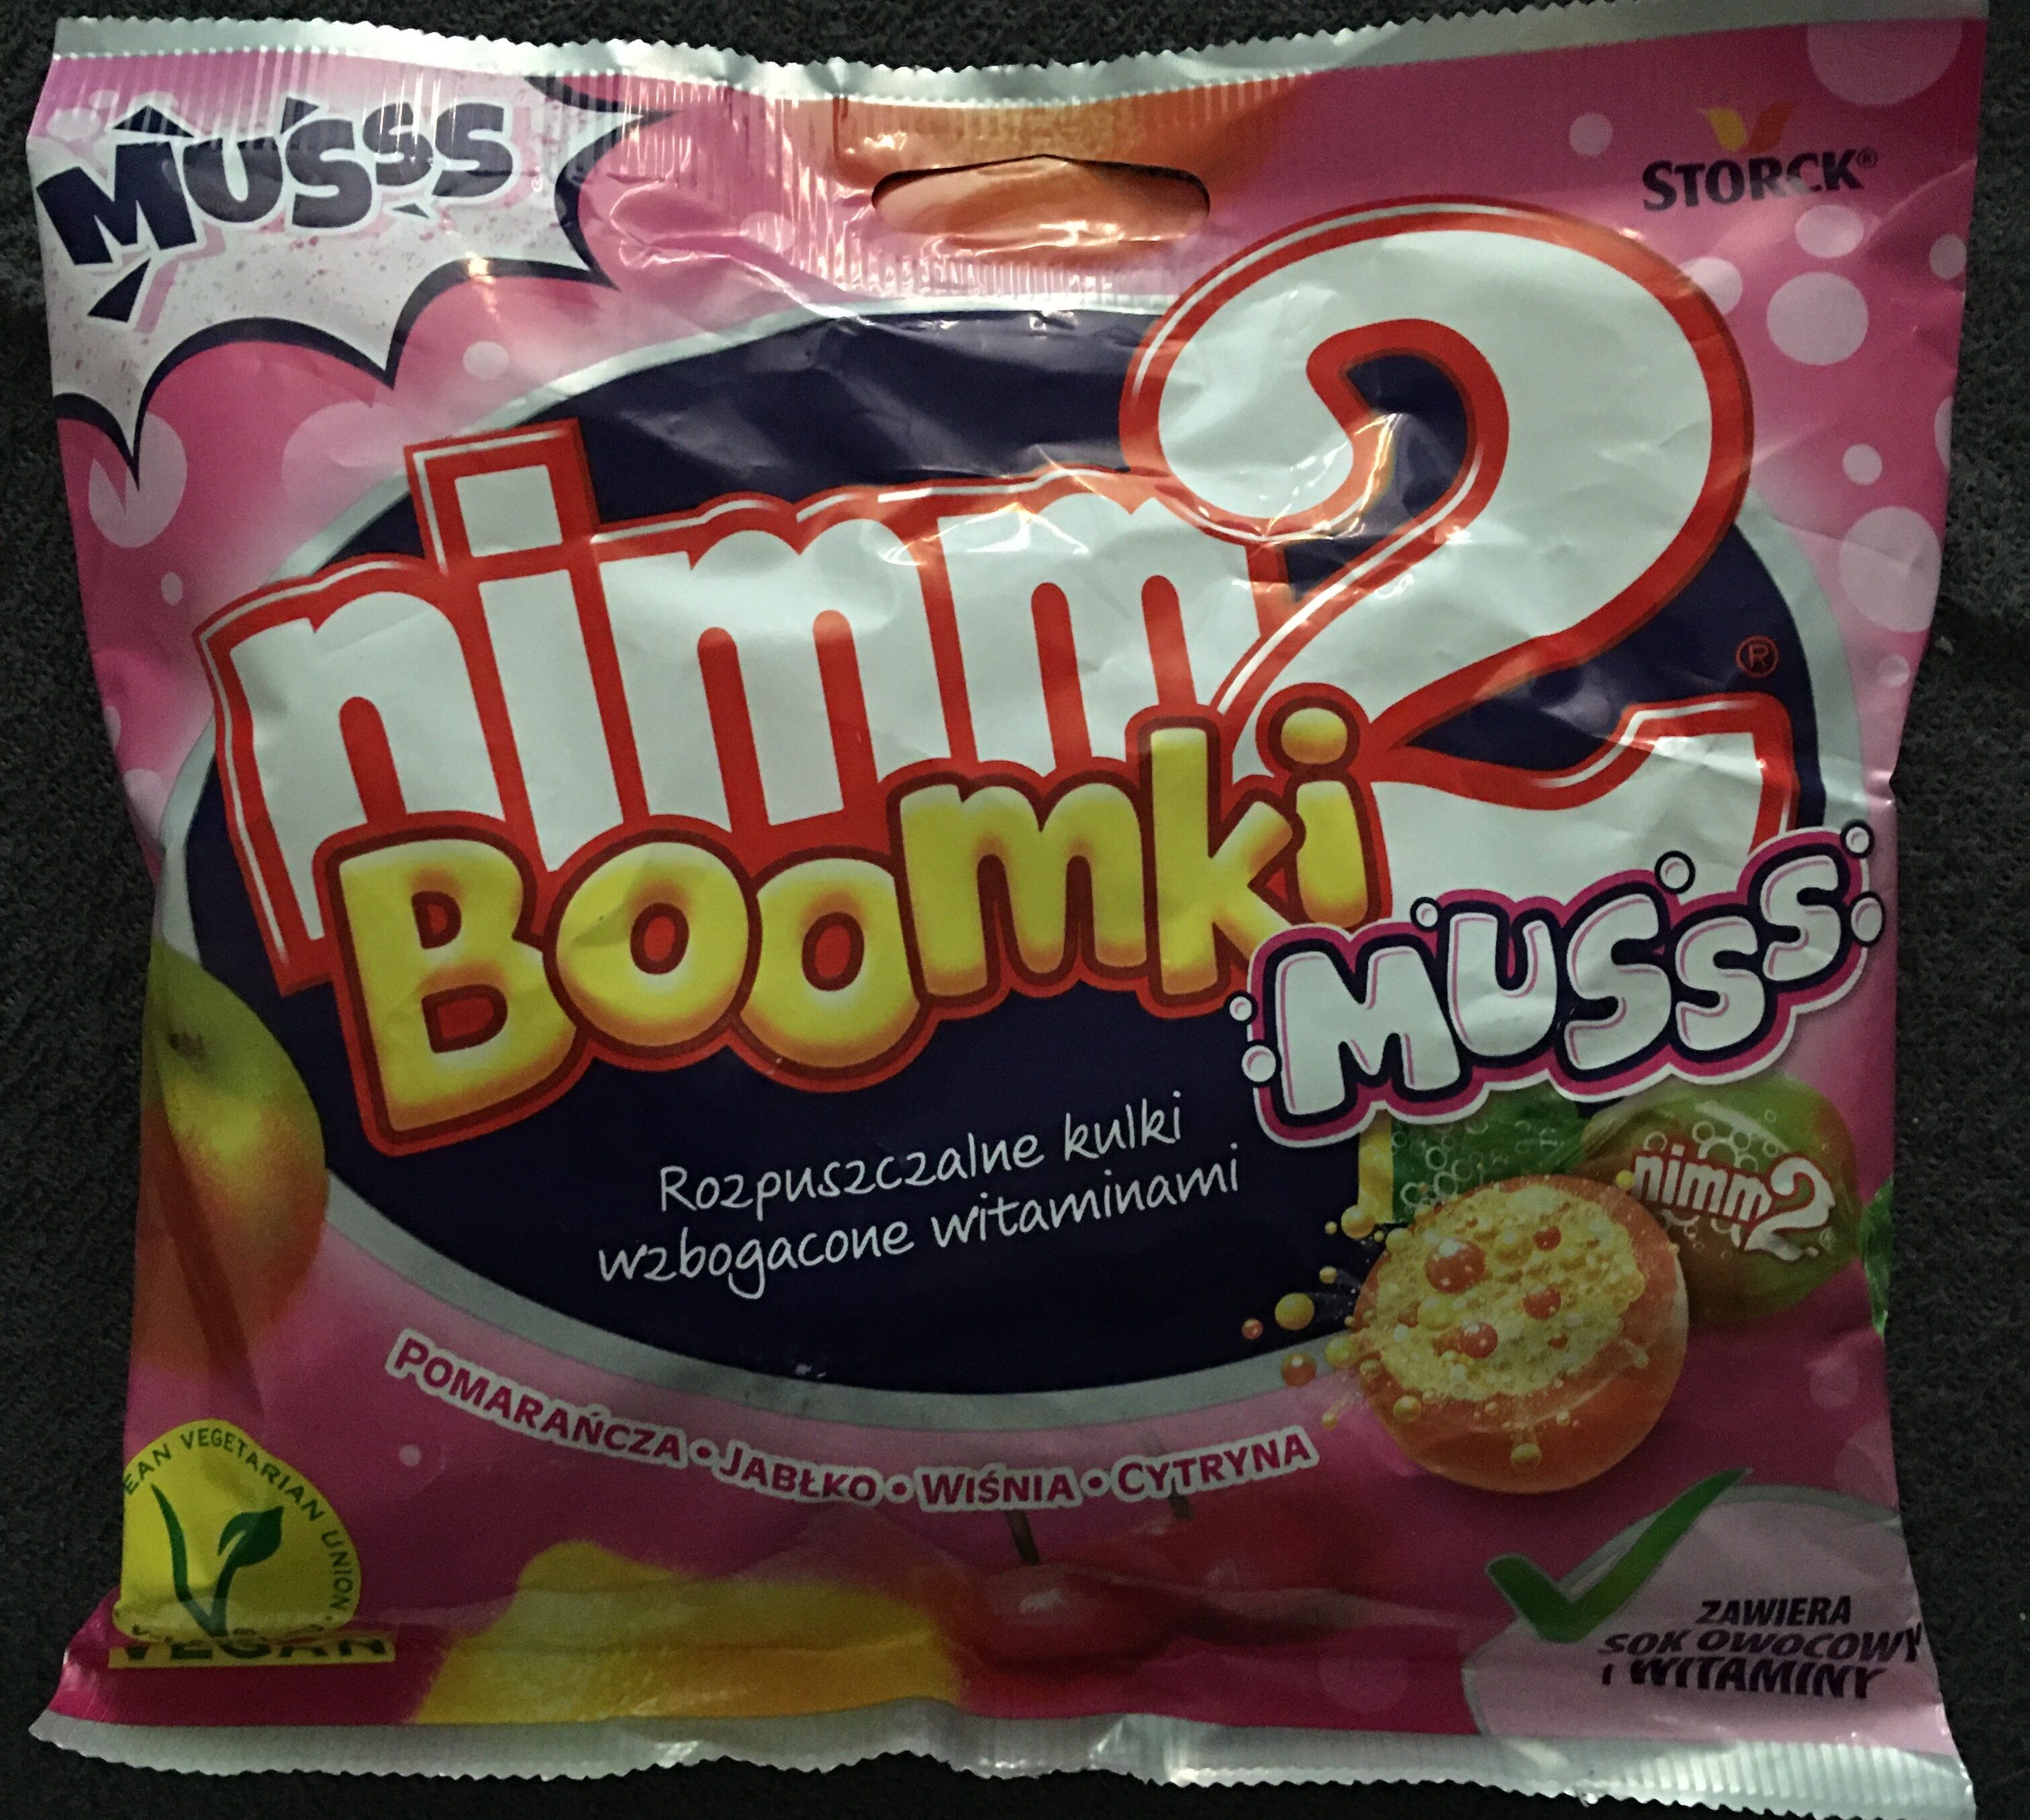 Nimm 2 Boomki musss - pomarańcza, jabłko, wiśnia, cytryna - Product - pl